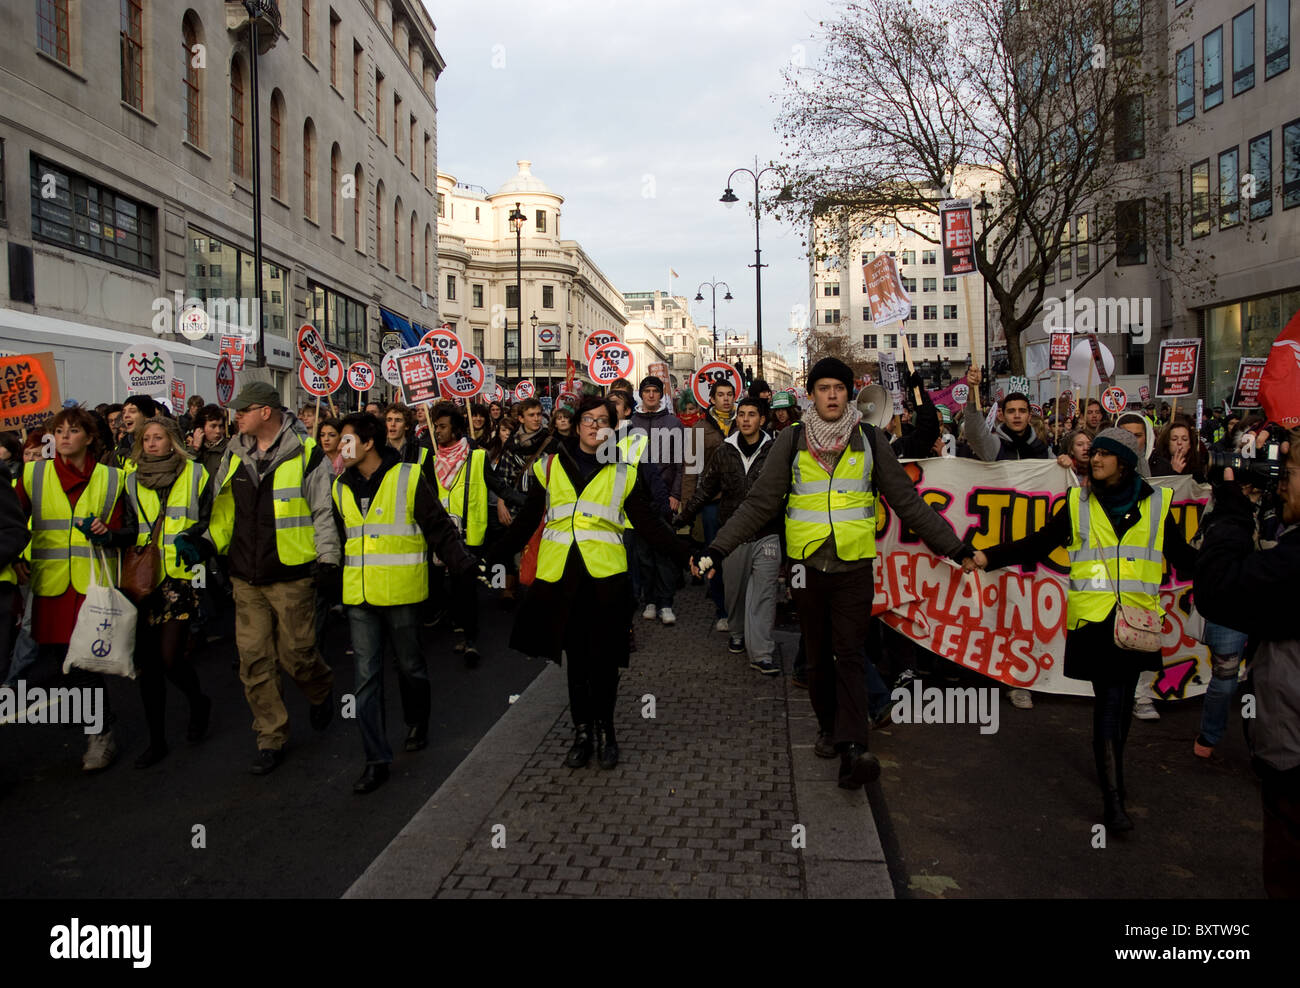 Les élèves marche vers Trafalgar square au cours de protestation le 9 décembre Banque D'Images